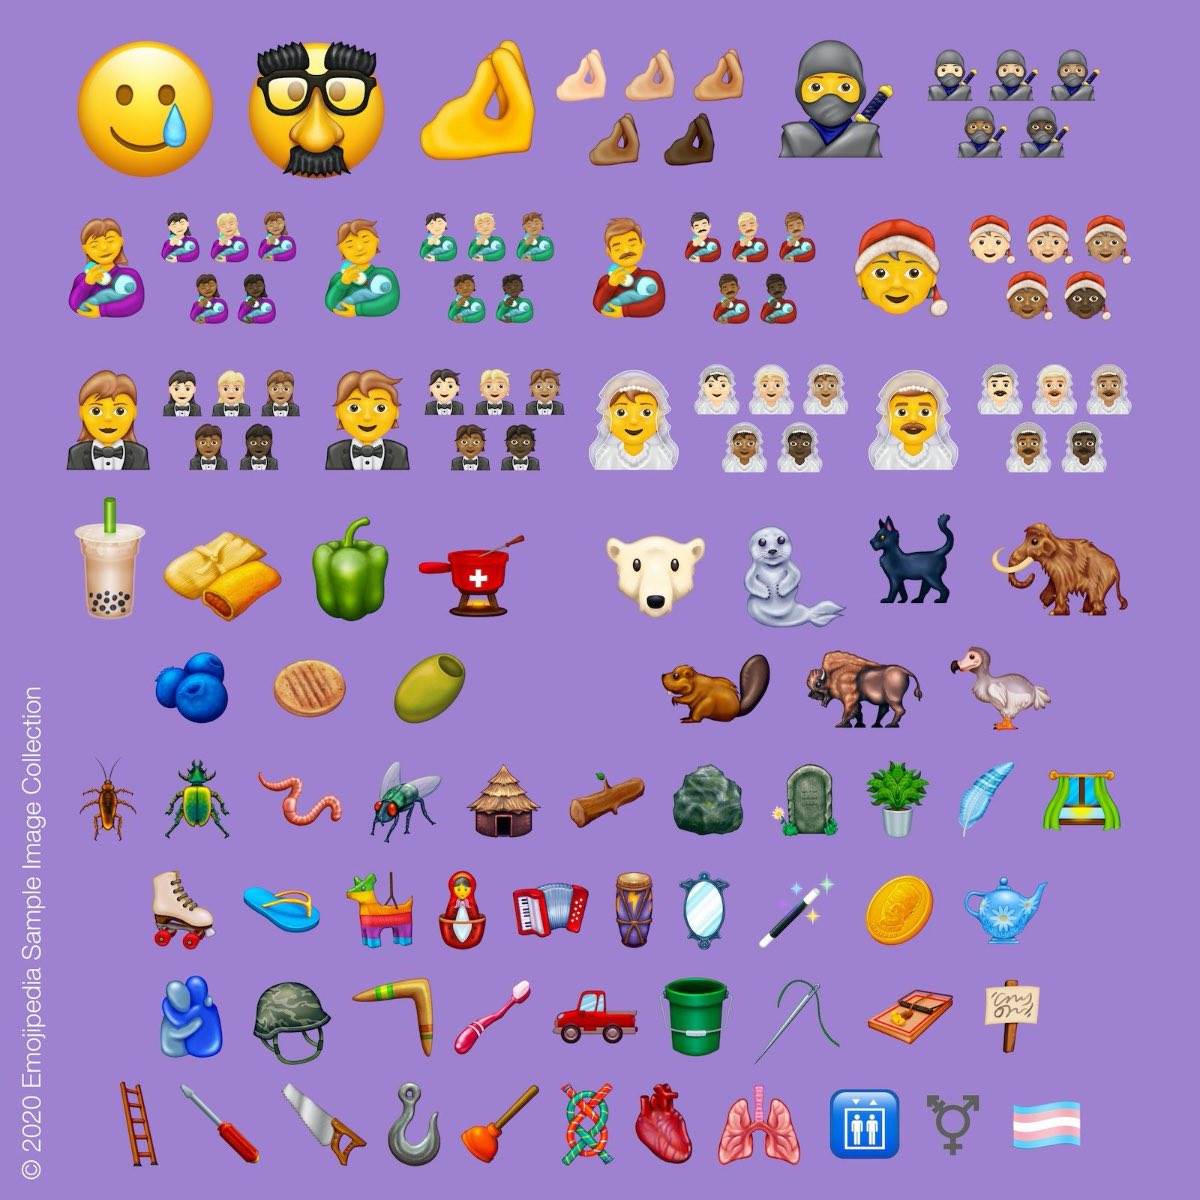 Oto 117 emoji, które trafią do nowego iOS 14 polecane, ciekawostki Wideo, nowe emoji, iPhone, iPad, iOS 14, ikony, emotki, emoji, Apple  Do prezentacji i premiery iOS 14 mamy co prawda jeszcze bardzo dużo czasu, ale w sieci już dziś mówi się o tym, że w najnowszej wersji iOS 14 pojawi się 117 nowych emoji. Oto one! 2020 emojipedia sample image collection2